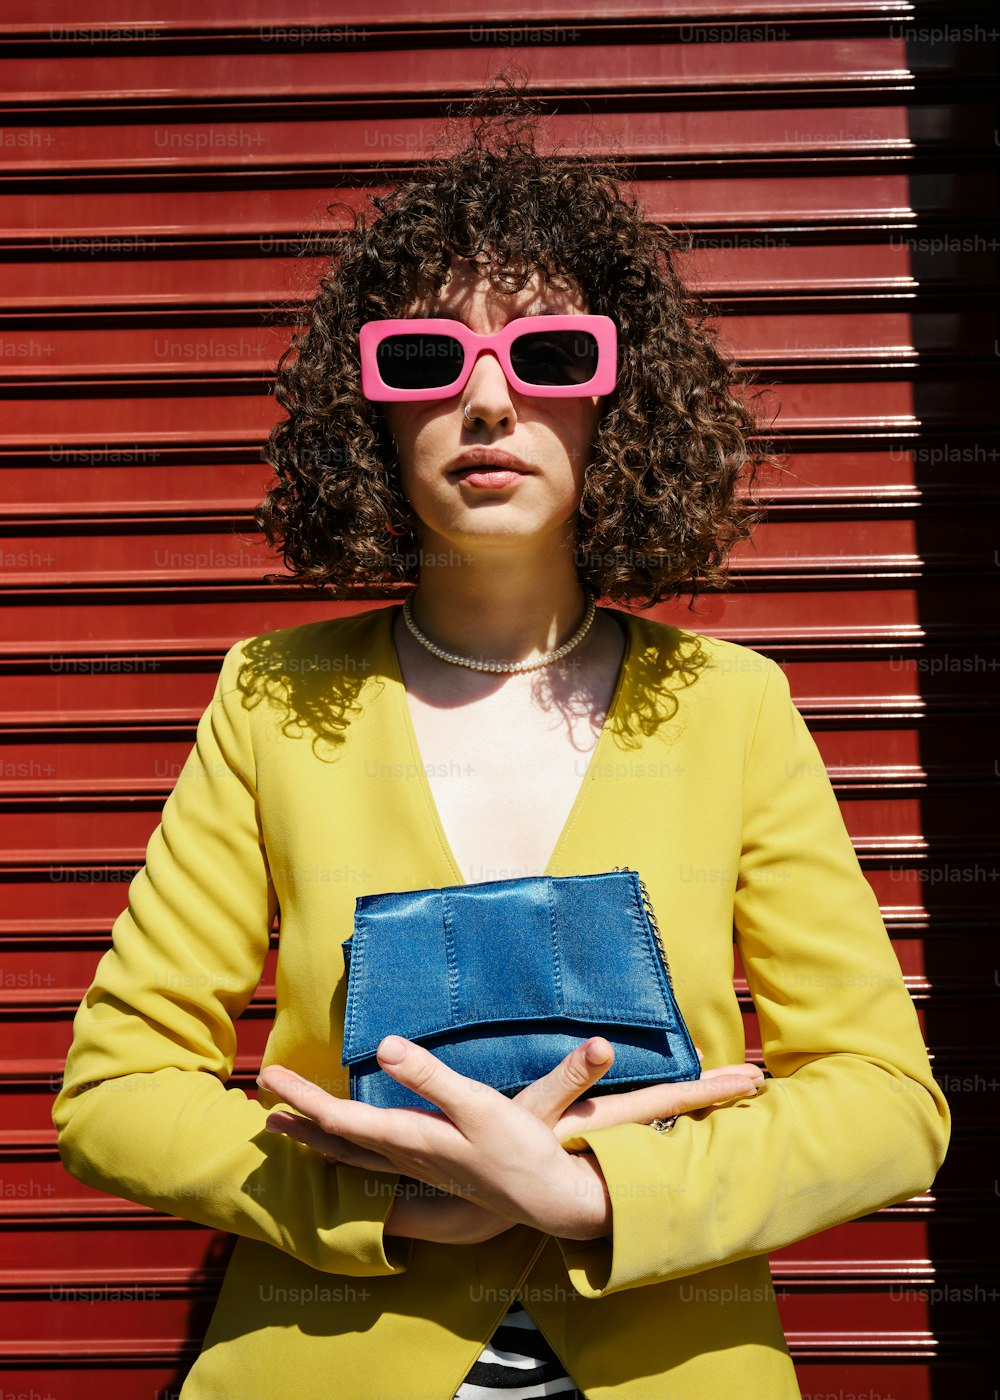 黄色いジャケットとピンクのサングラスをかけた女性が青い財布を持っている